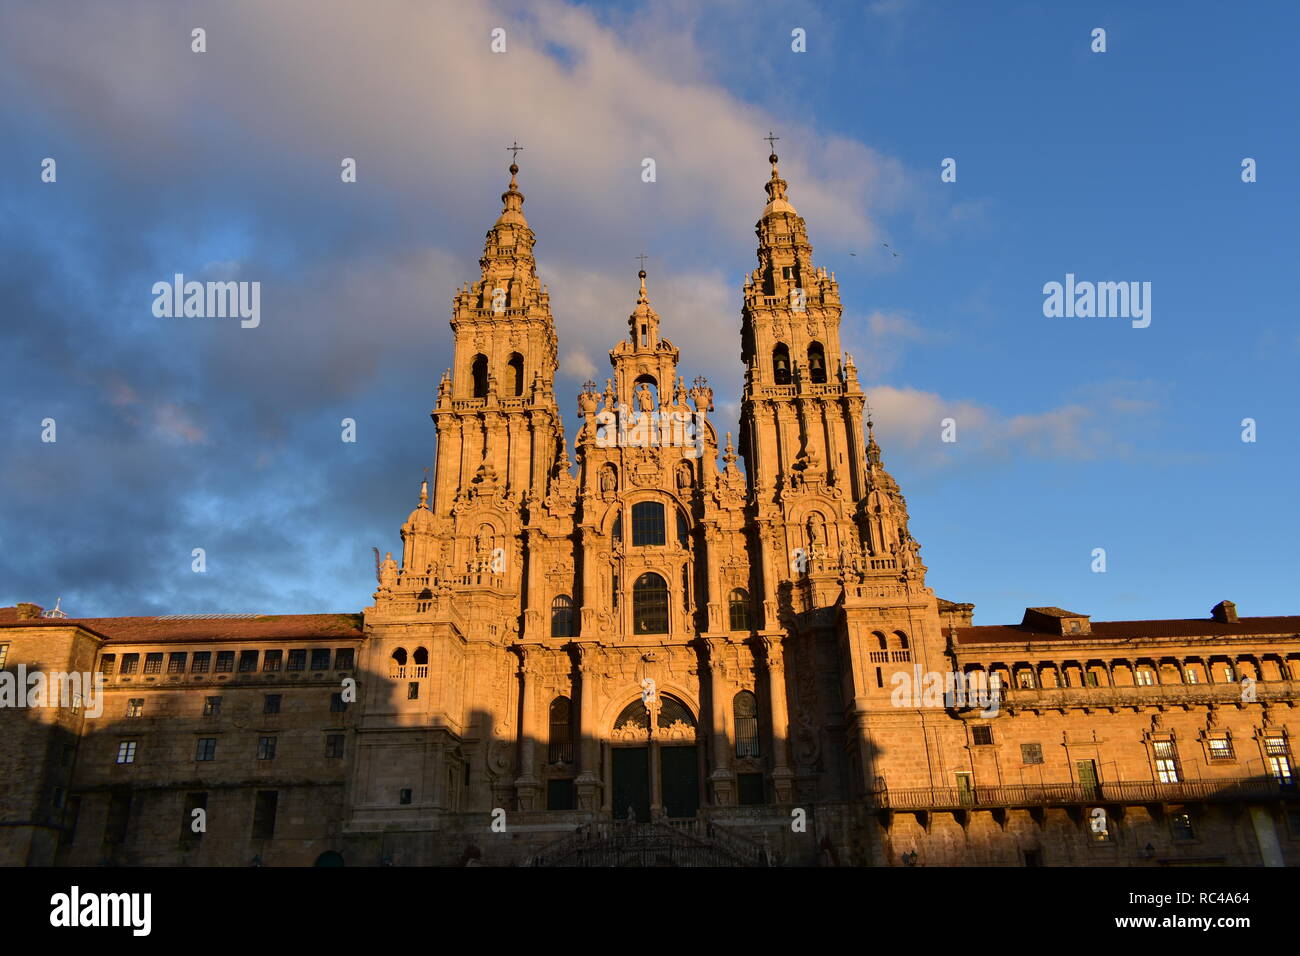 Die Kathedrale, die barocke Fassade und Türme. Obradoiro Square, Abendlicht, bewölkten Tag. Santiago de Compostela, Provinz La Coruna, Galicien, Spanien. Stockfoto